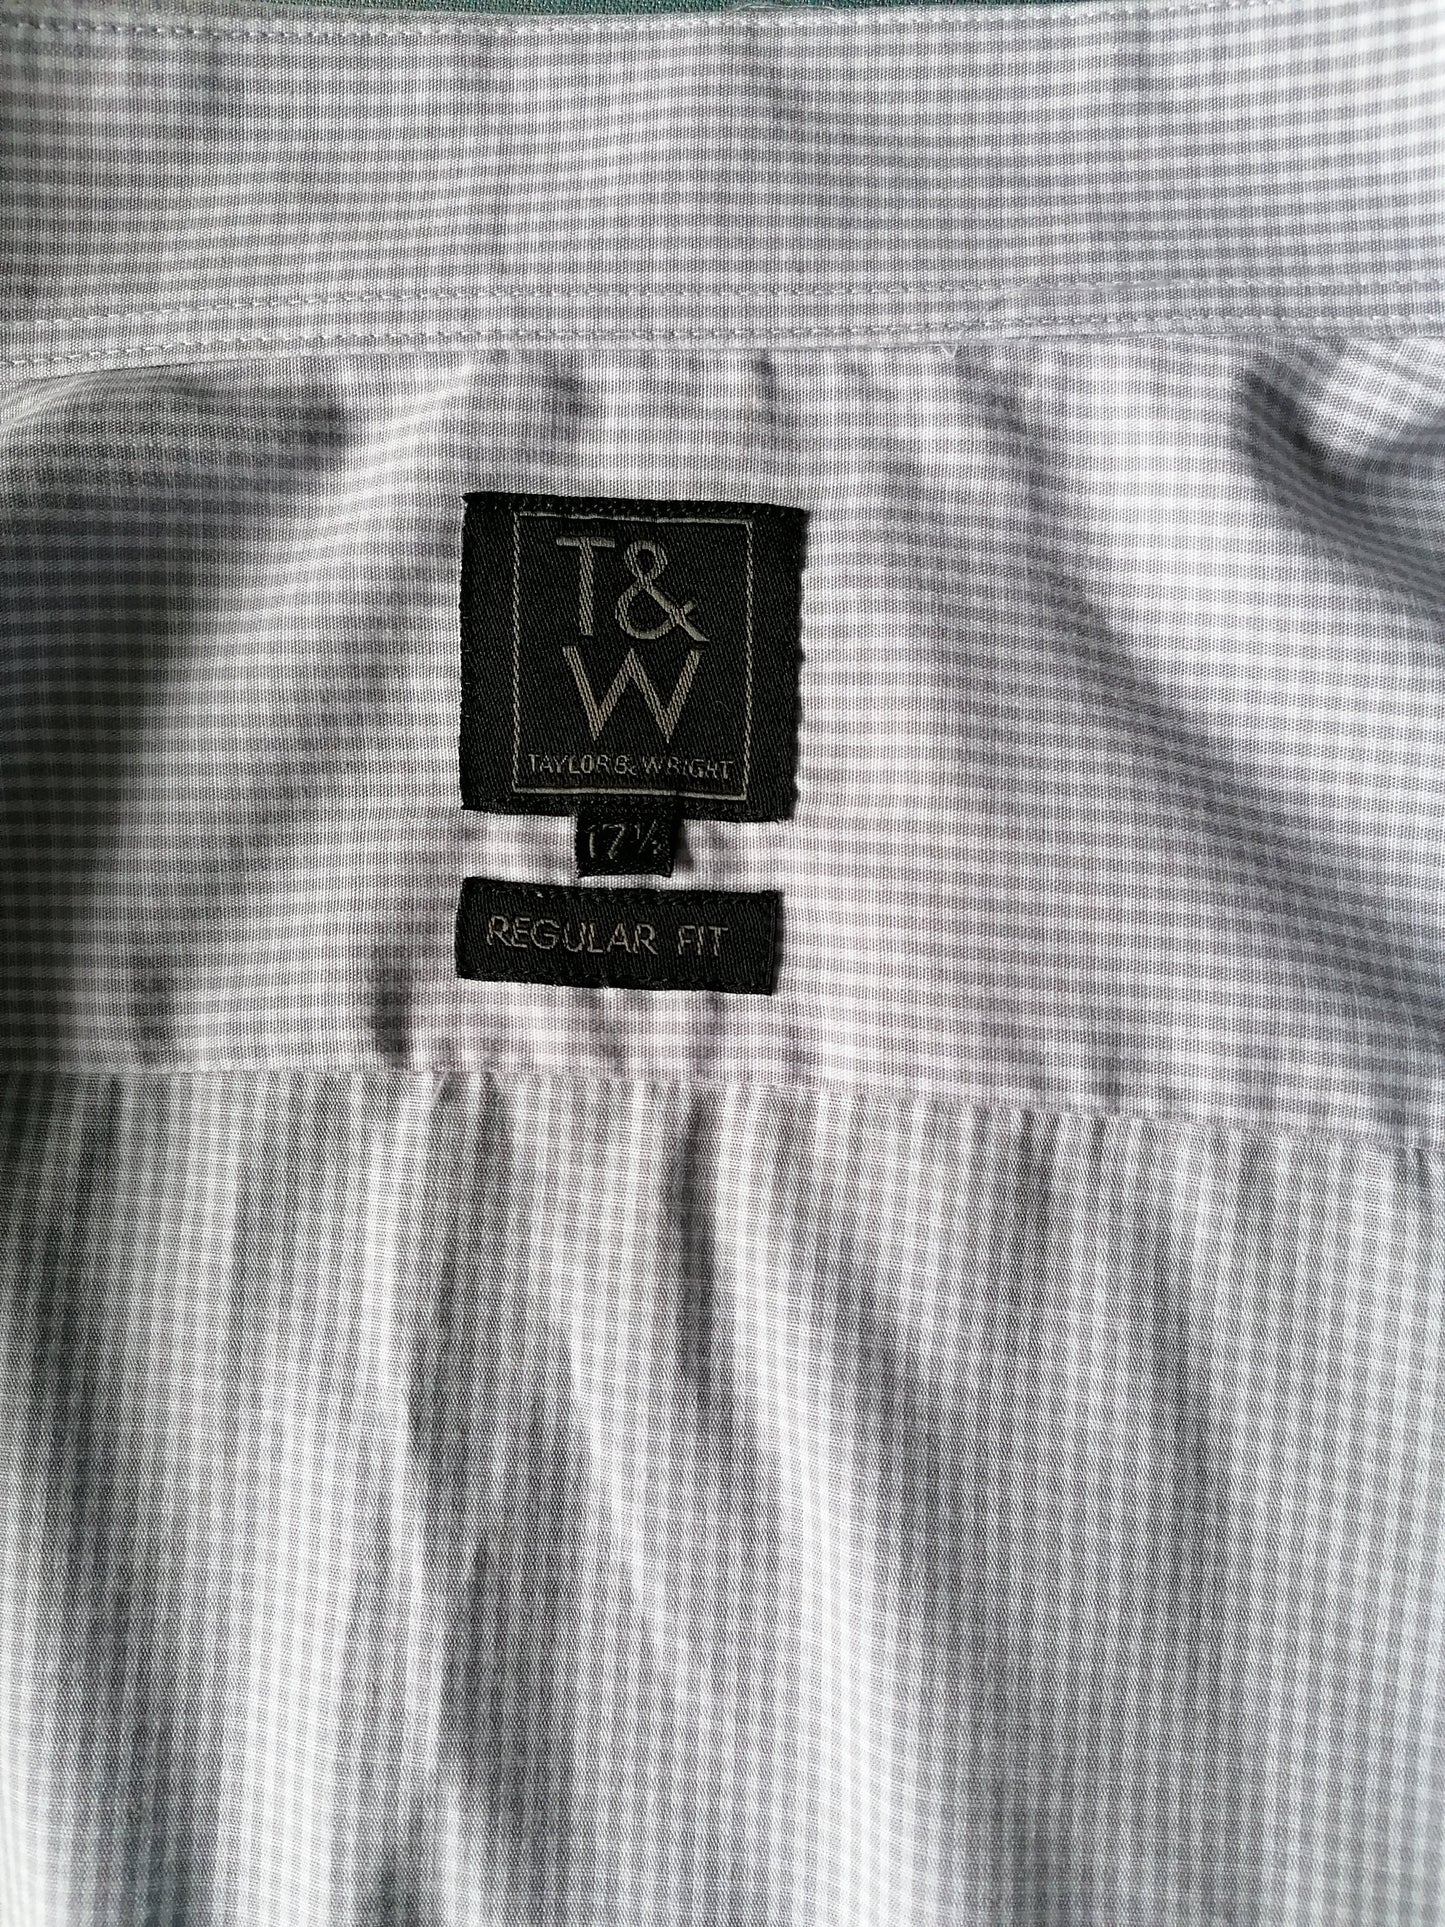 Maglietta Taylor & Wright. Motivo bianco grigio. Taglia XL / XXL. Adattamento regolare. Cade grande